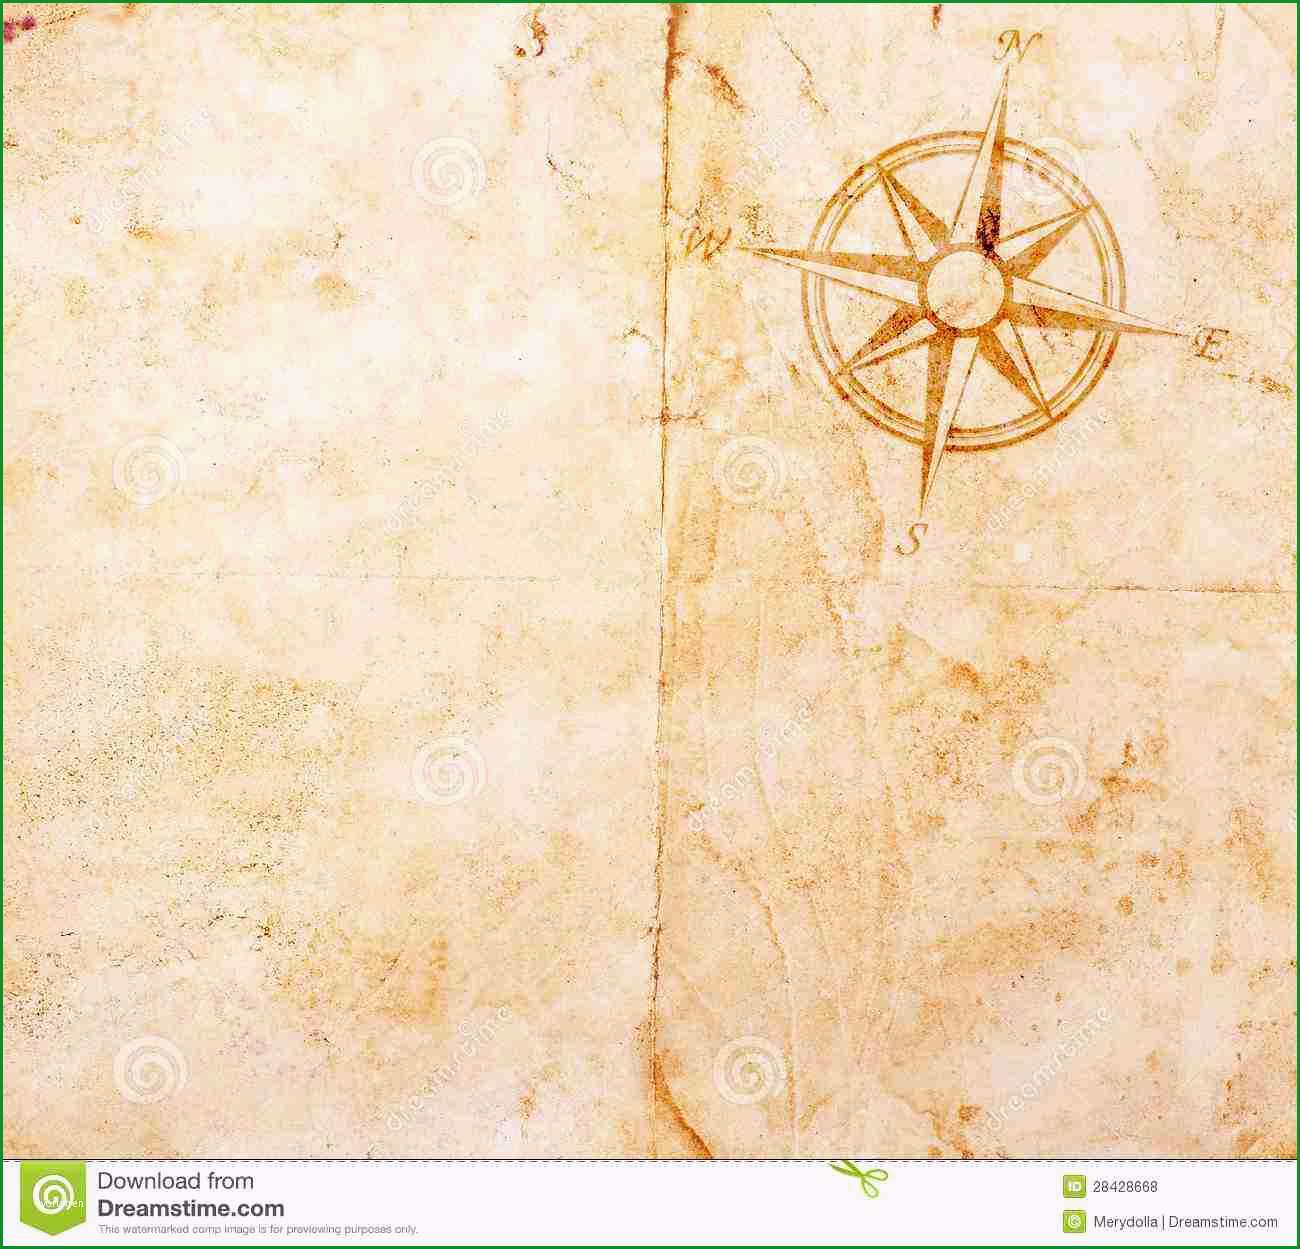 schatzkarte vorlage old treasure map vorstellung bandpages bei schatzkarte vorlage kostenlos